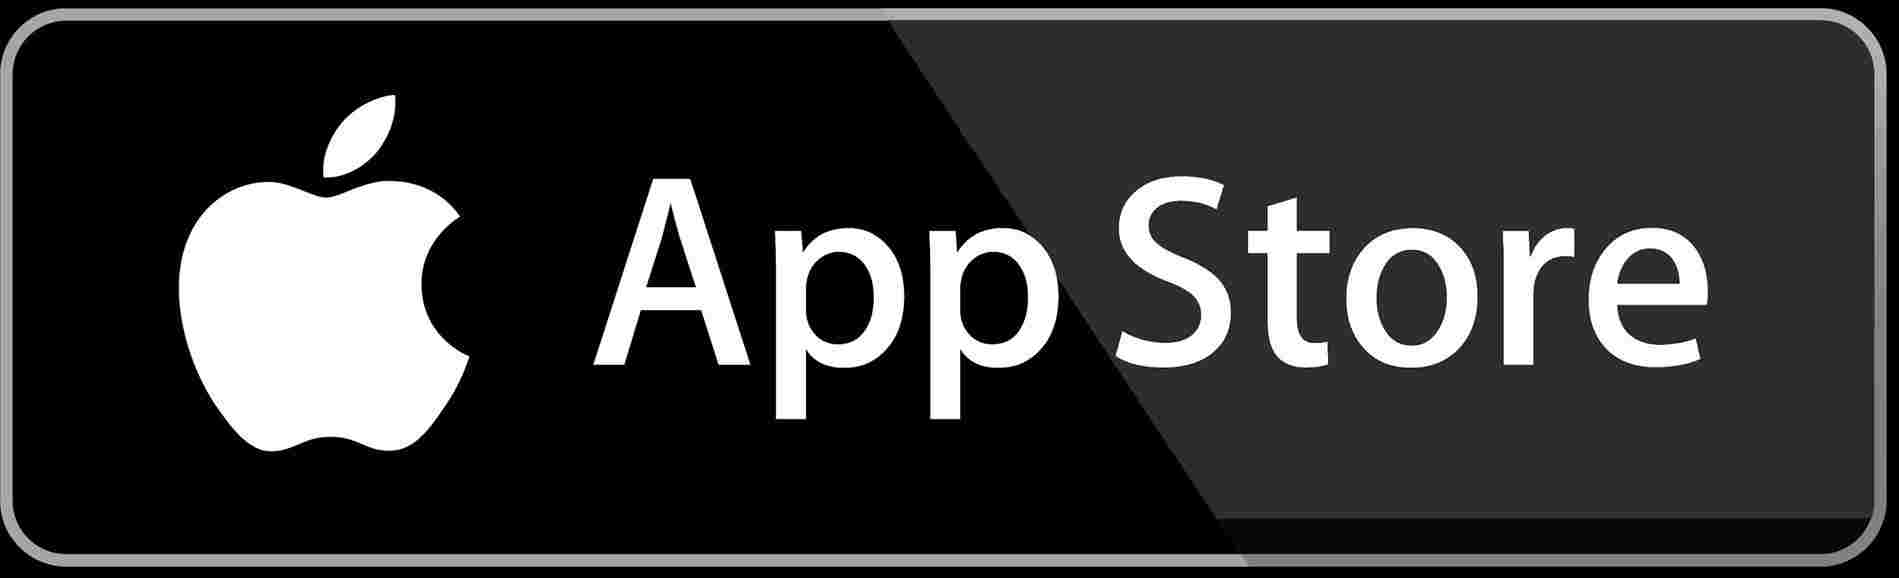 App-Store-logo.jpg